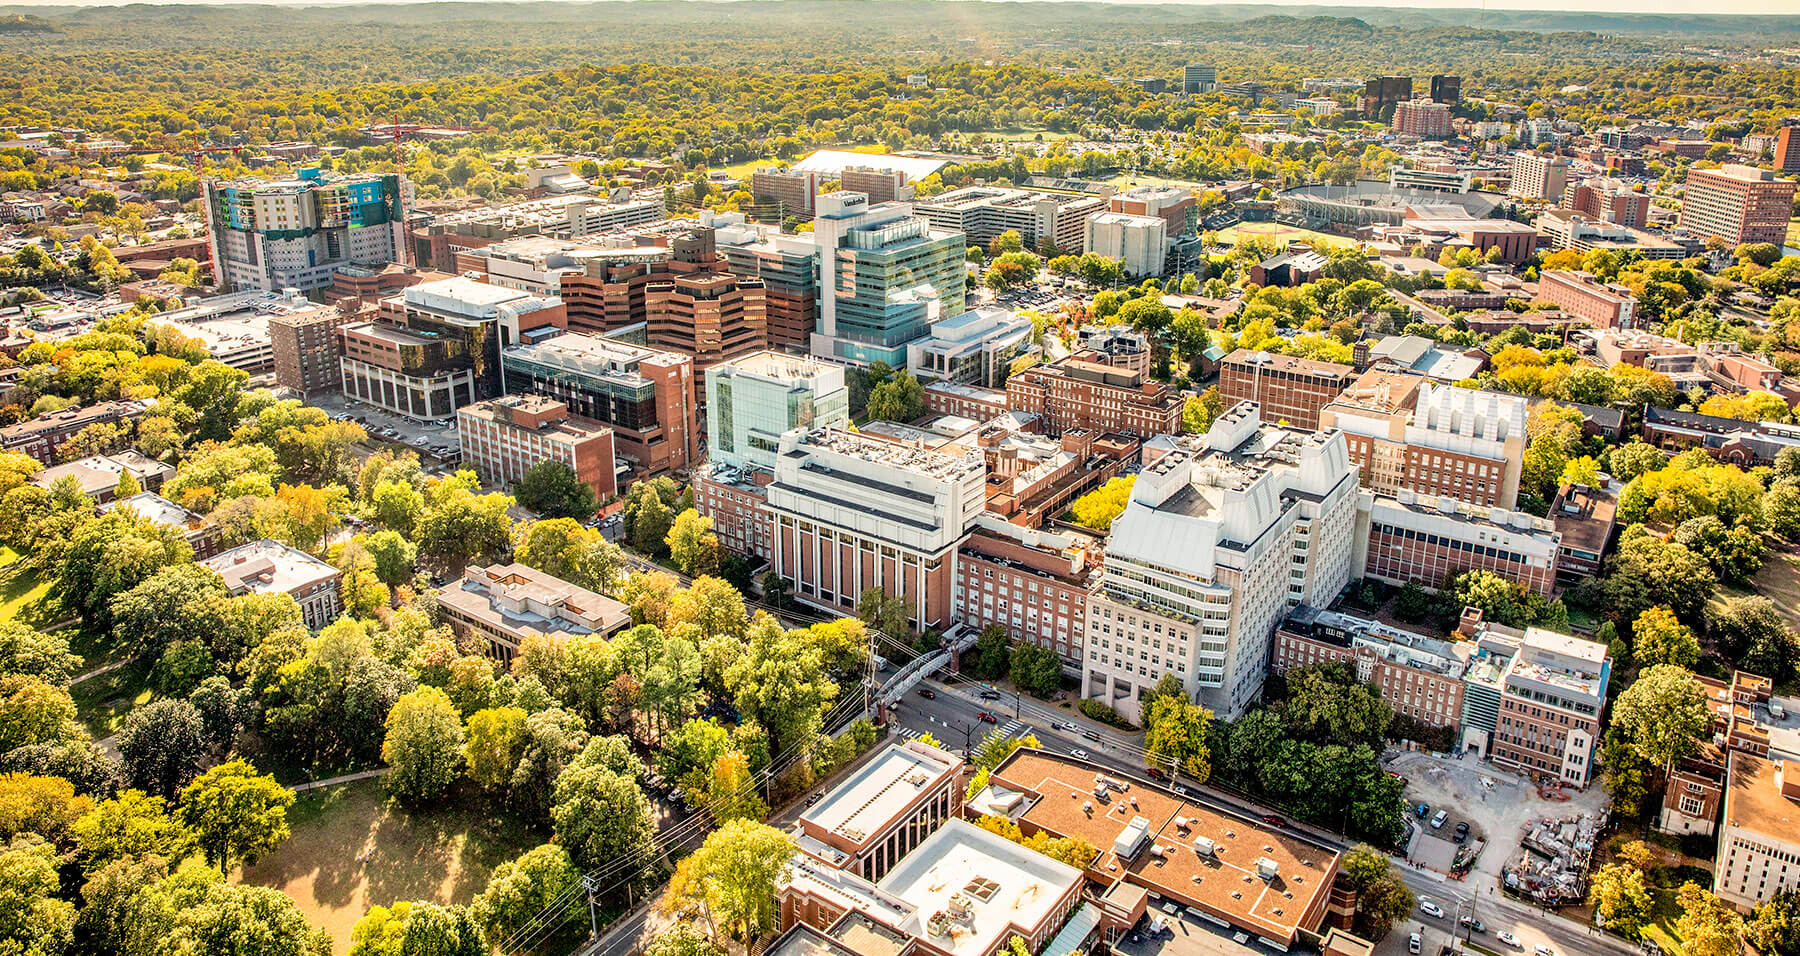 Top 20 Med Schools in US - Vanderbilt University School of Medicine